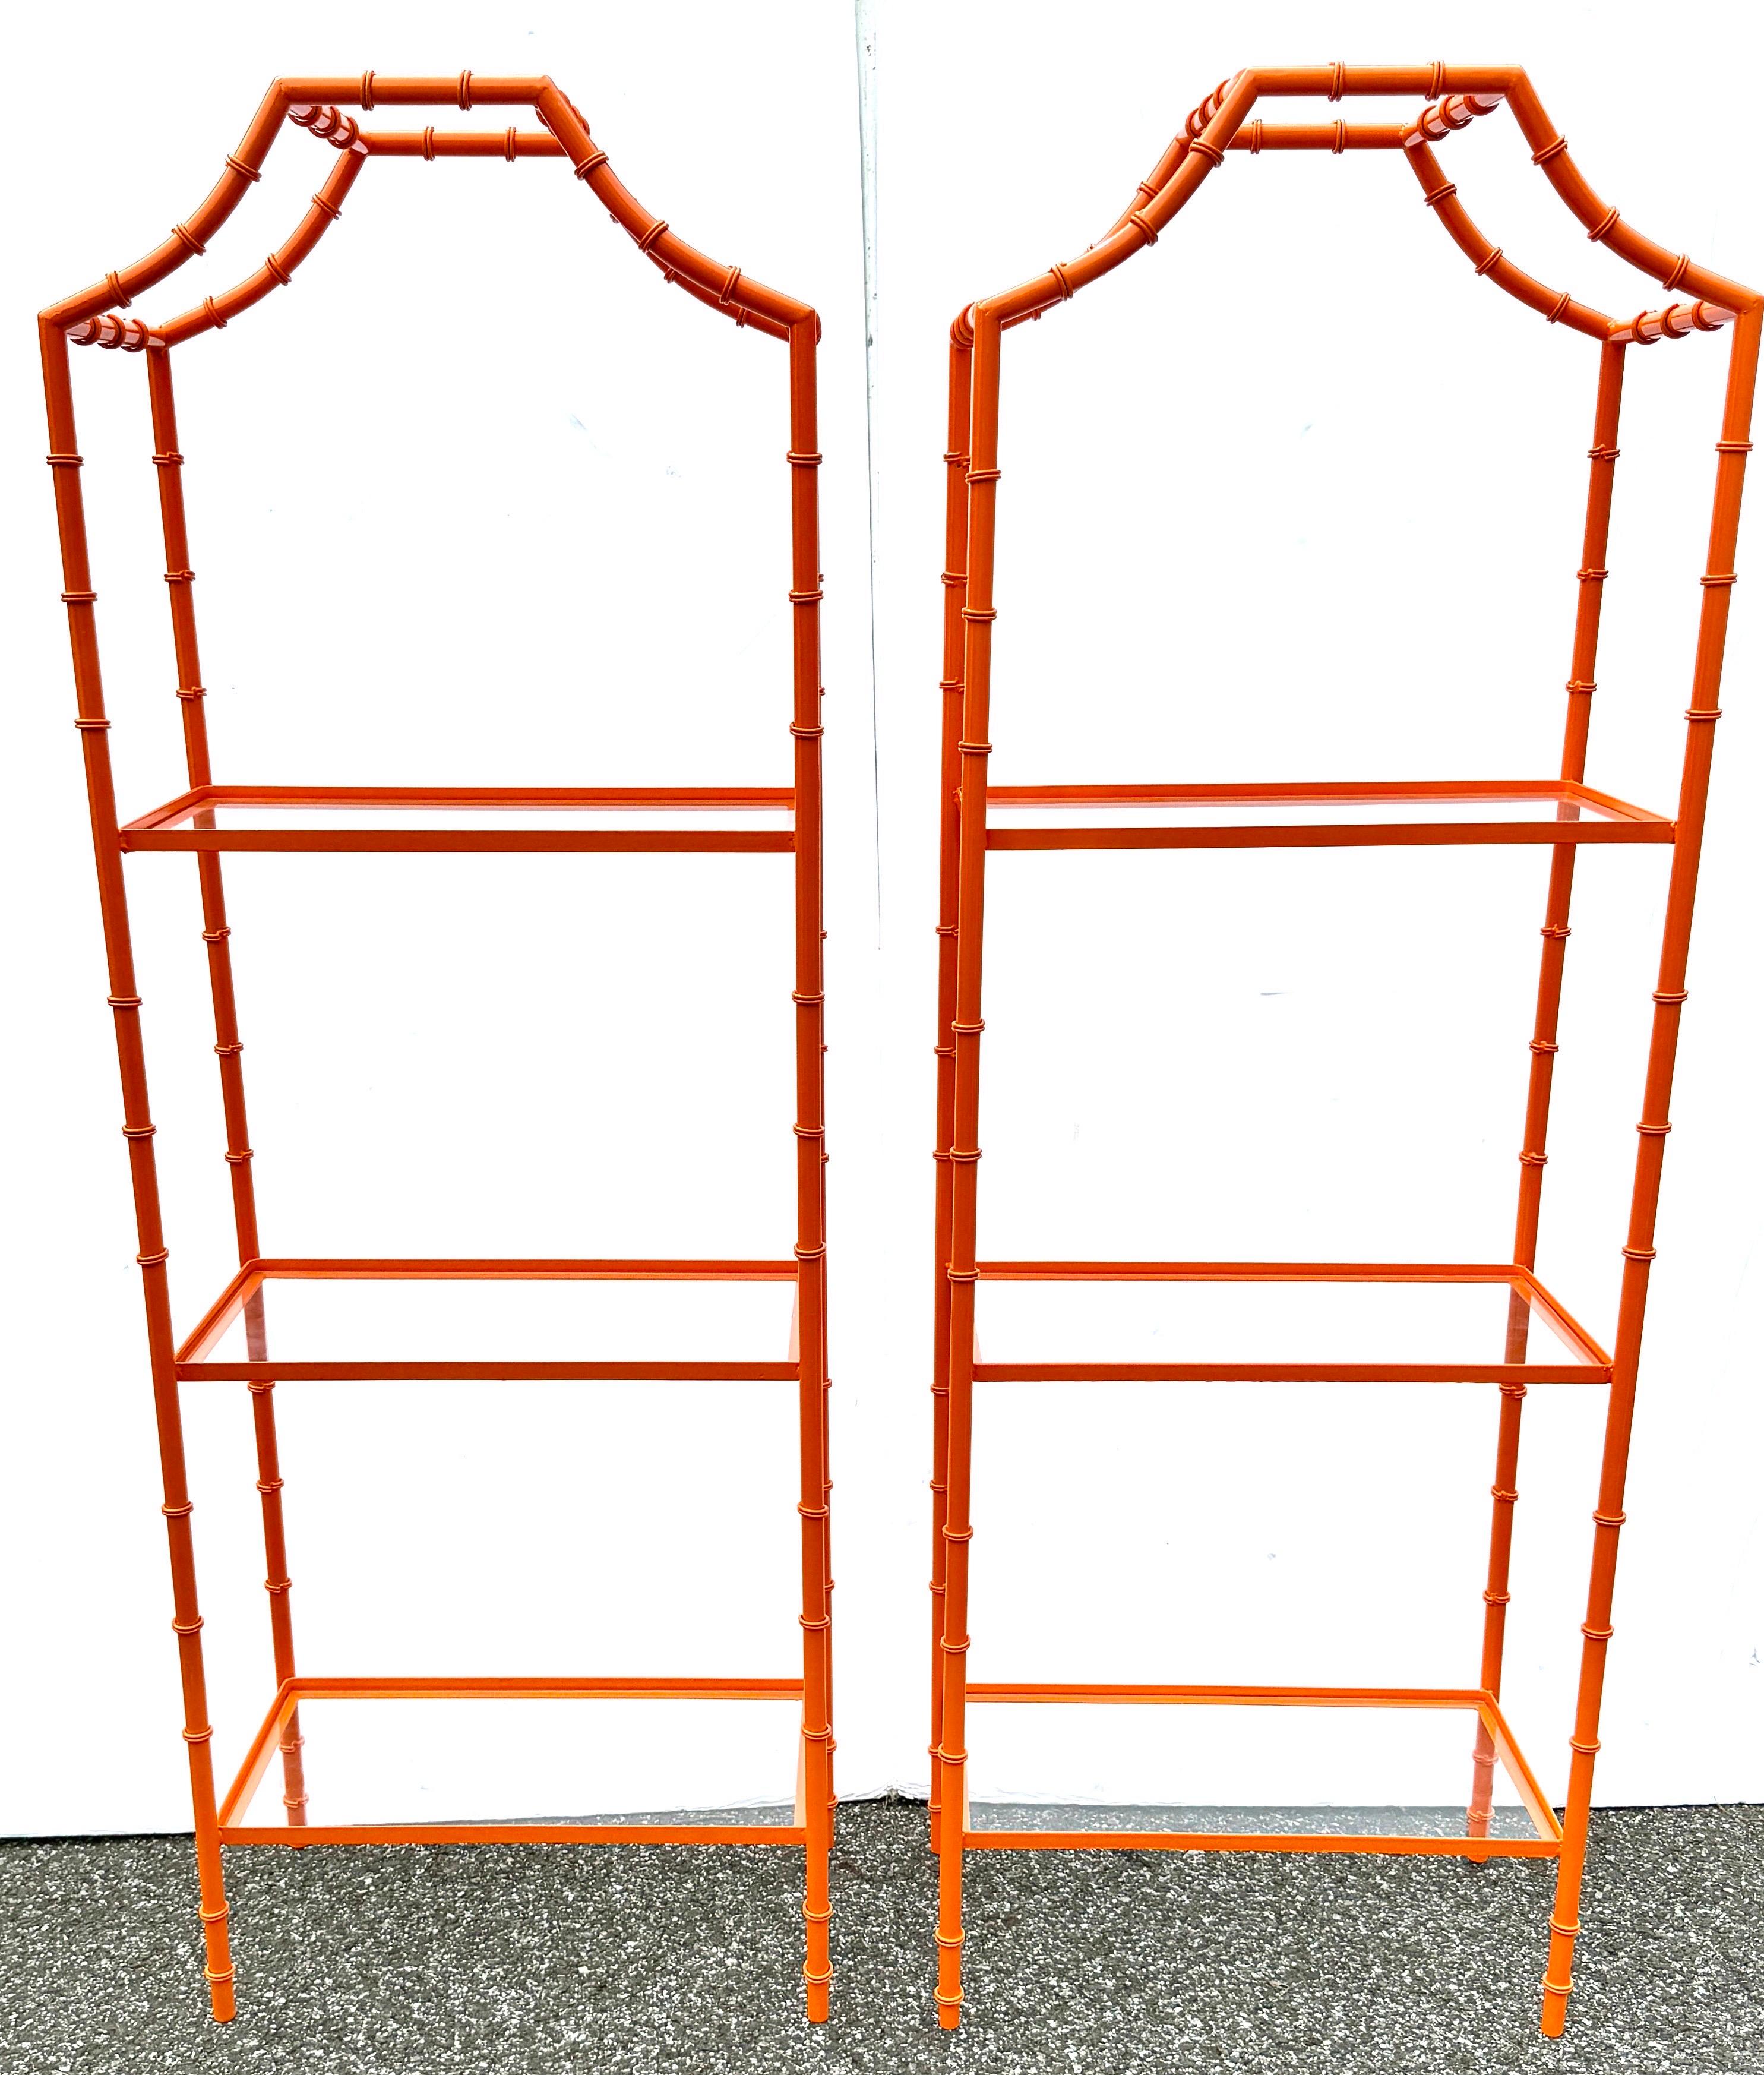 Mid-Century Modern Orange Faux Bamboo Etagere Regale, ein Paar

Zwei Etageren aus Metall mit Bambusimitat in einer pulverbeschichteten Farbe, die wir gerne Hermes Orange nennen. Diese Etageren aus der Mitte des Jahrhunderts verfügen über drei